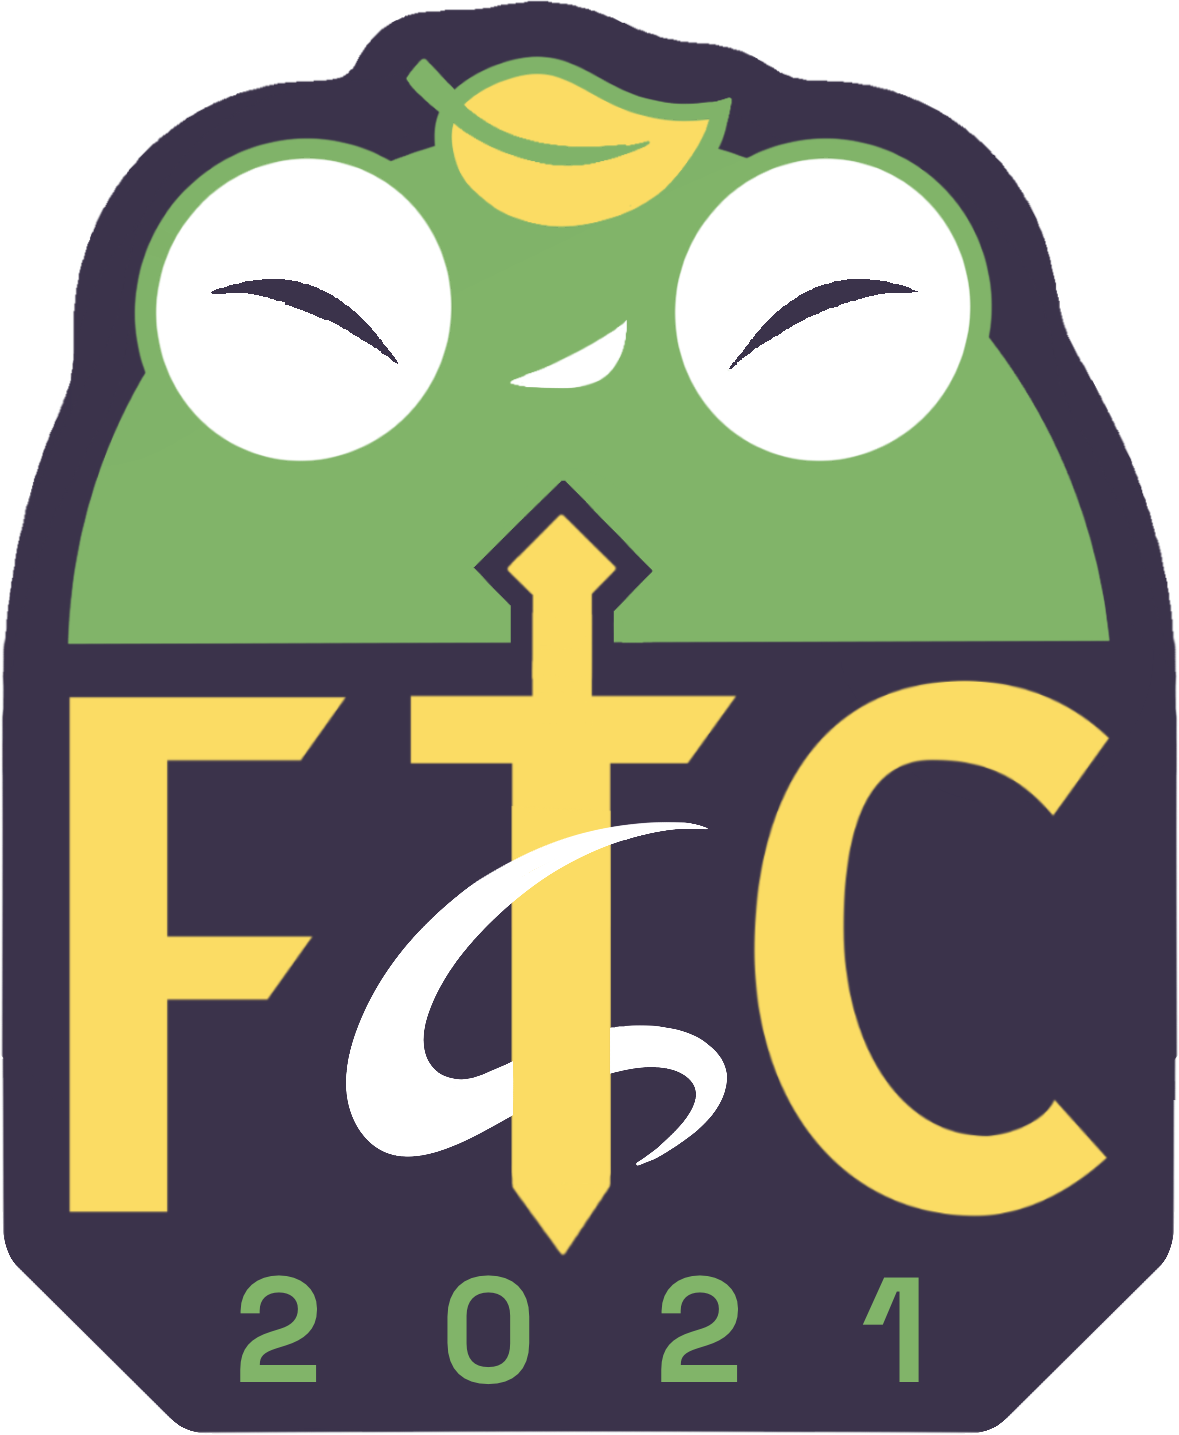 FTC 2021 logo